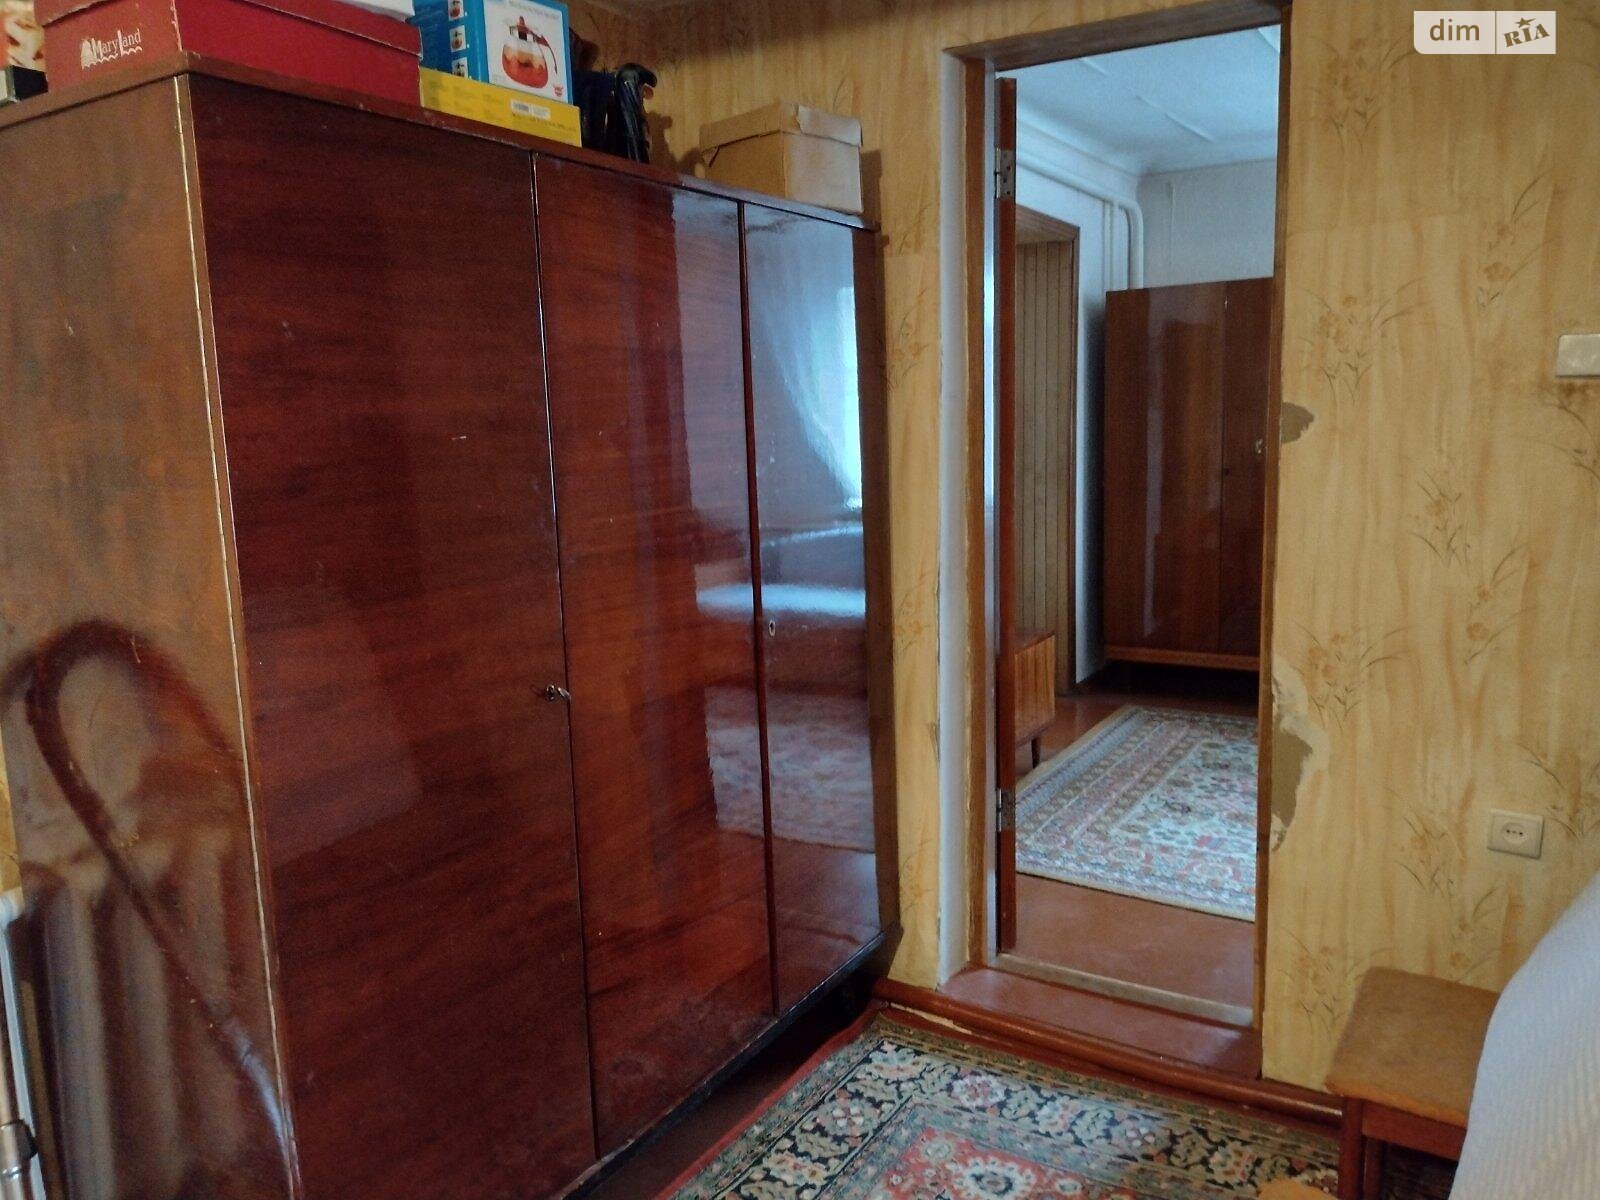 Продажа части дома в Коцюбинском, улица Бакала, 4 комнаты фото 1